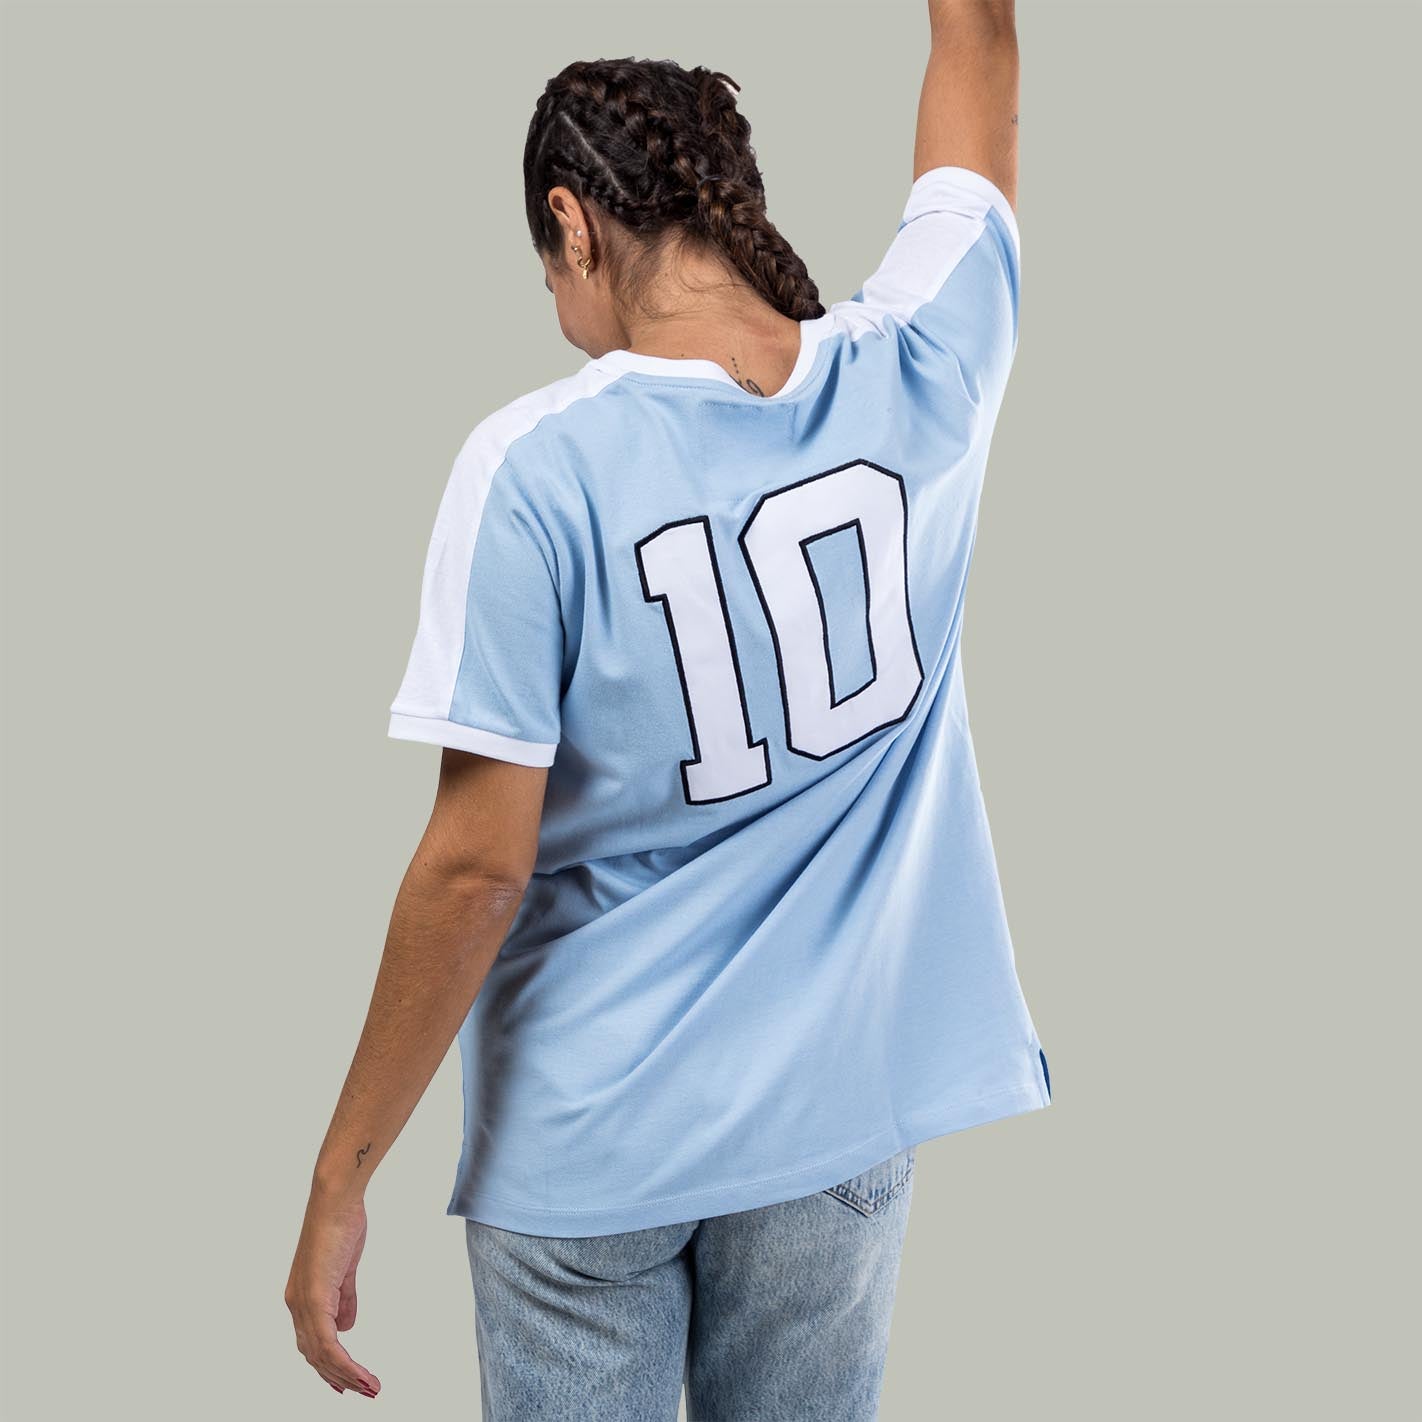 Uruguay 1974 Camiseta Retro Fútbol